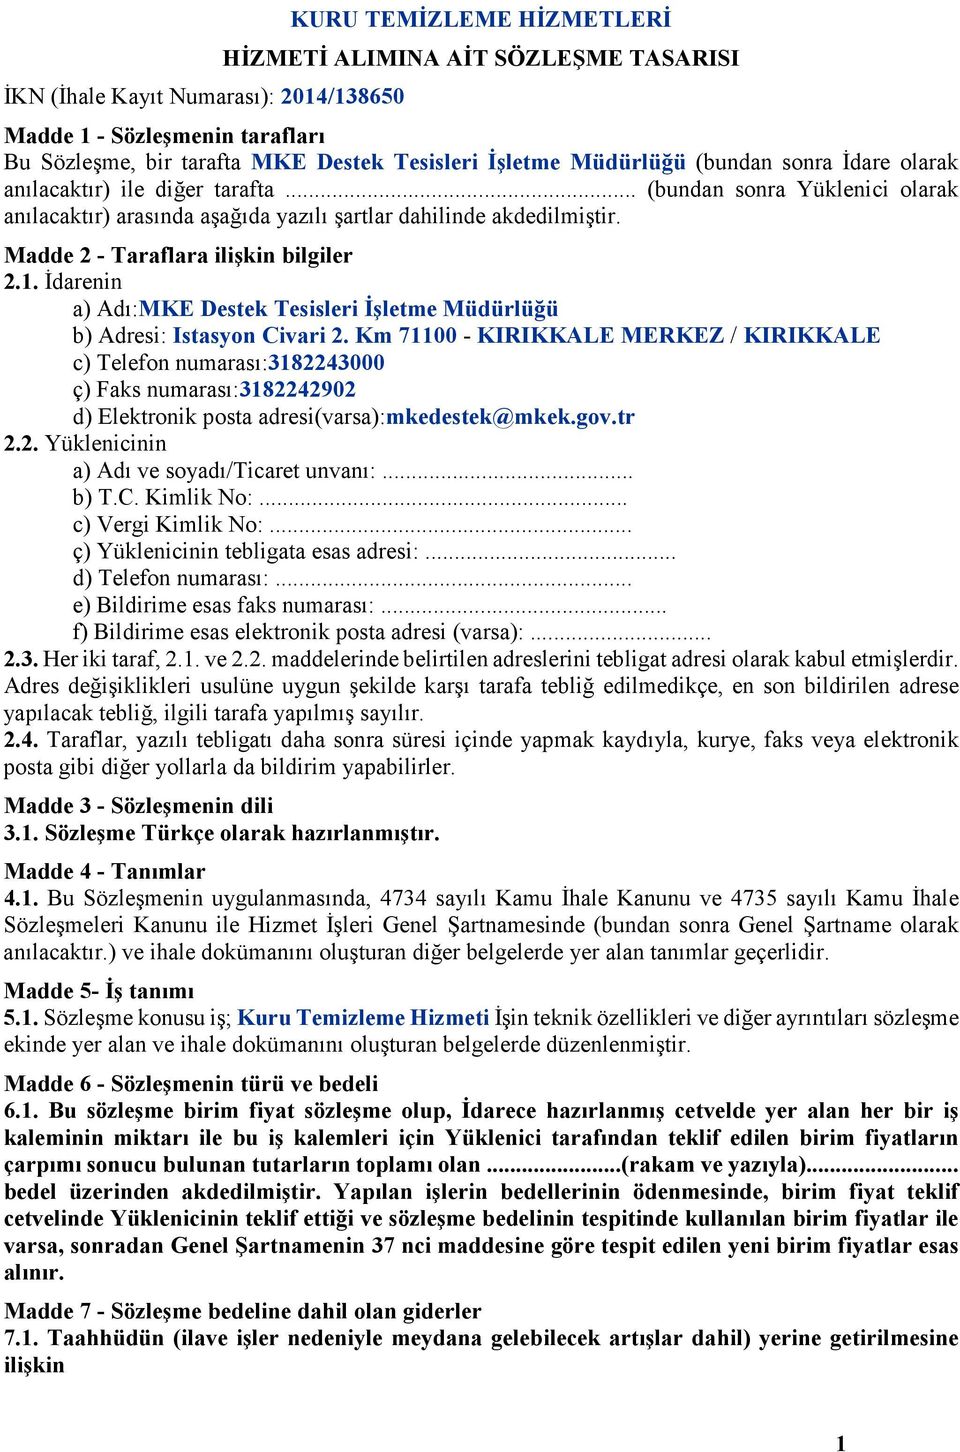 Madde 2 - Taraflara ilişkin bilgiler 2.1. Đdarenin a) Adı:MKE Destek Tesisleri Đşletme Müdürlüğü b) Adresi: Istasyon Civari 2.